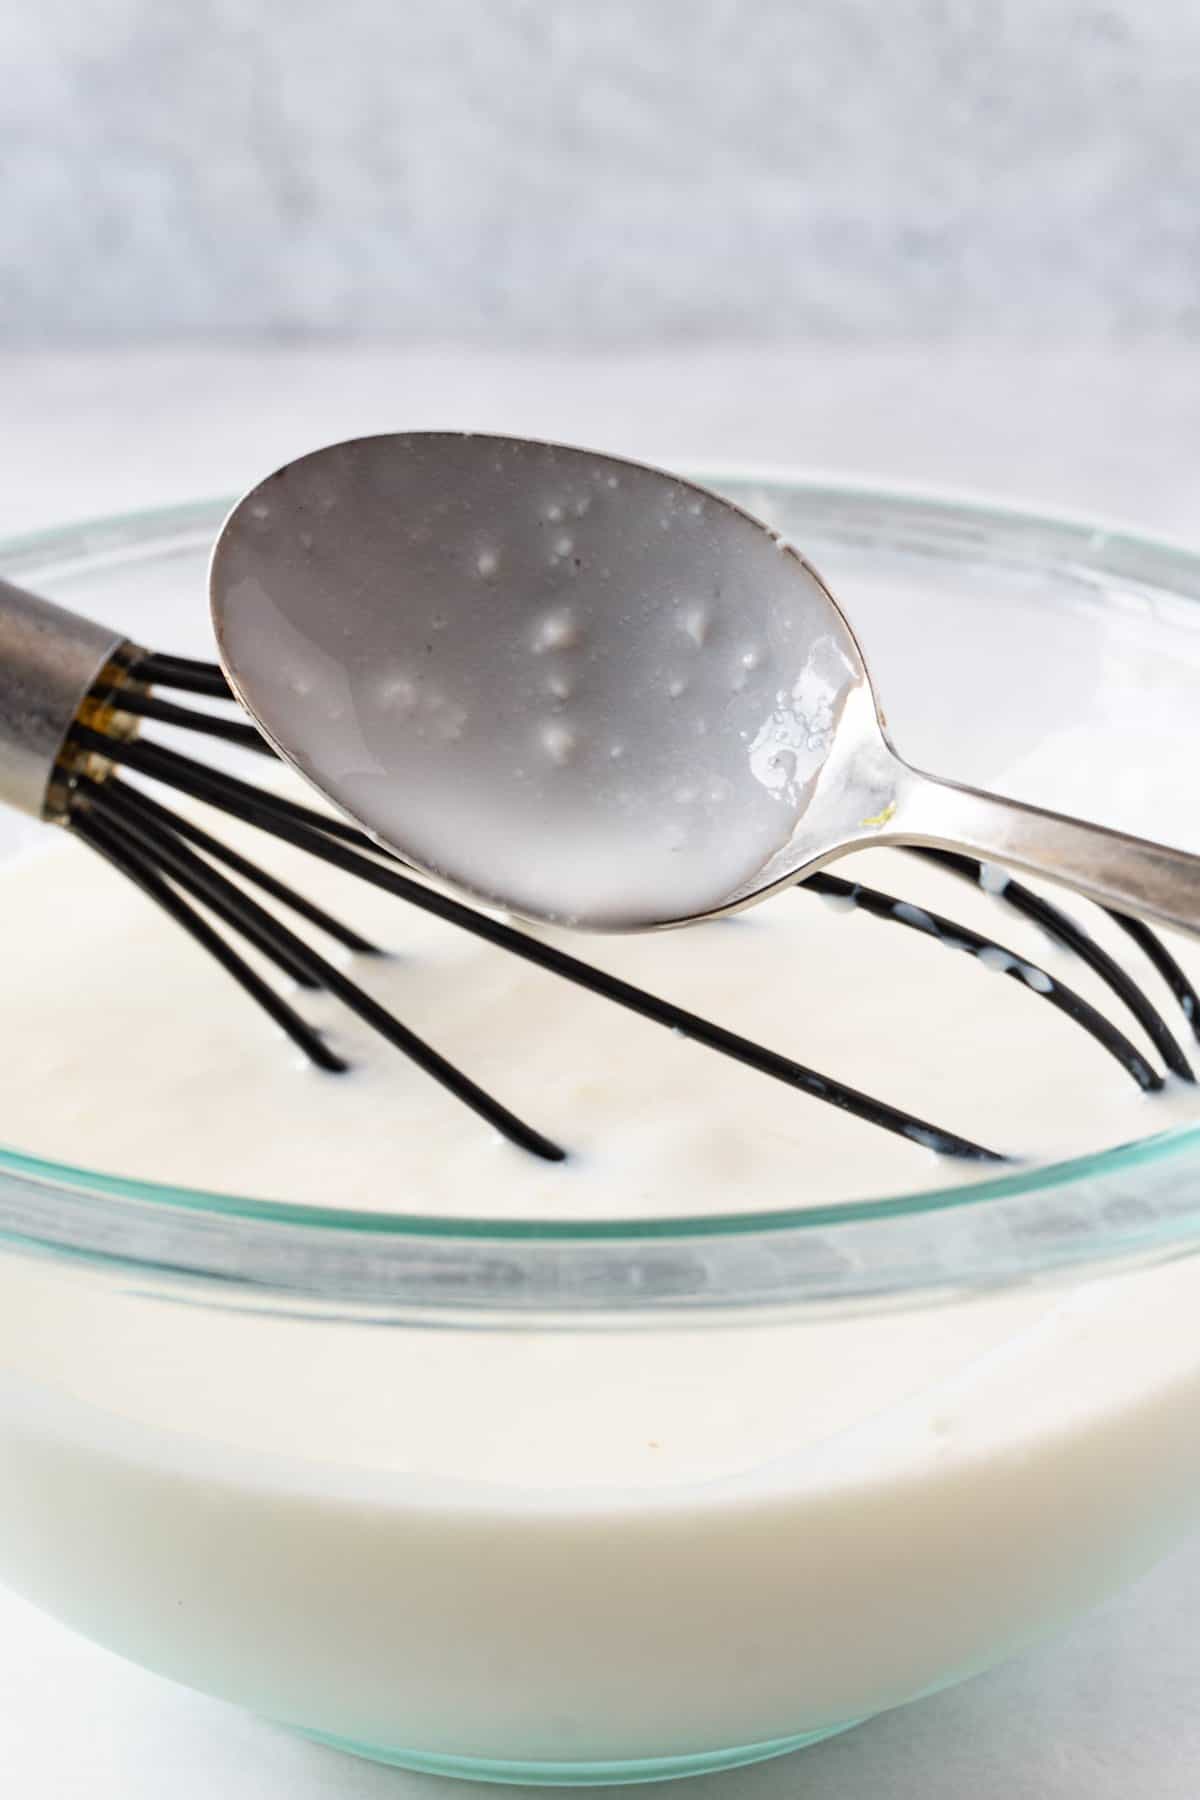 good buttermilk on spoon showing a few little lumps